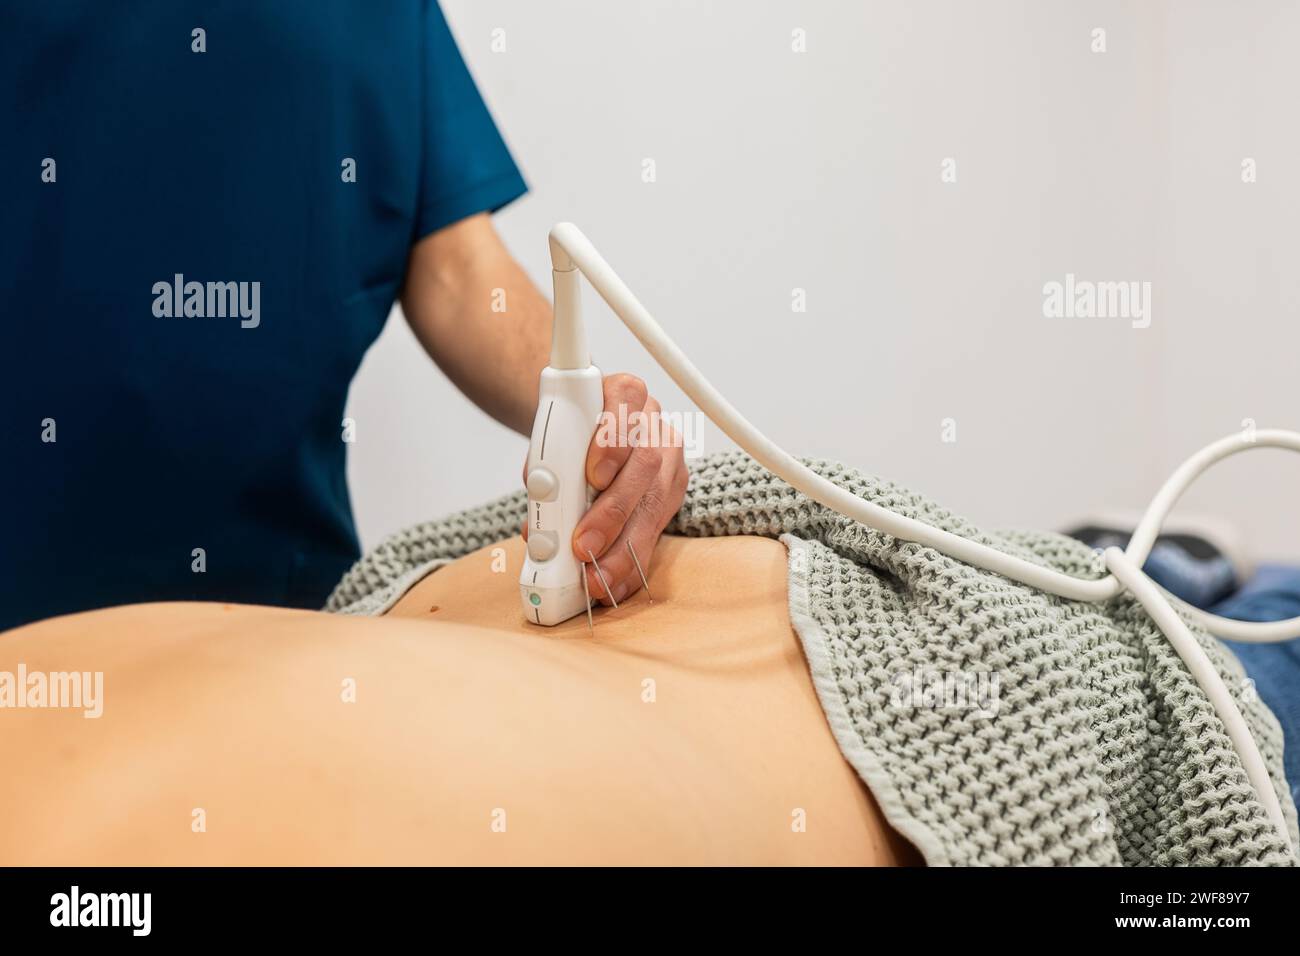 Un operatore sanitario esegue un'ecografia sull'area addominale del paziente, utilizzando un trasduttore per eseguire la scansione sulla pelle Foto Stock